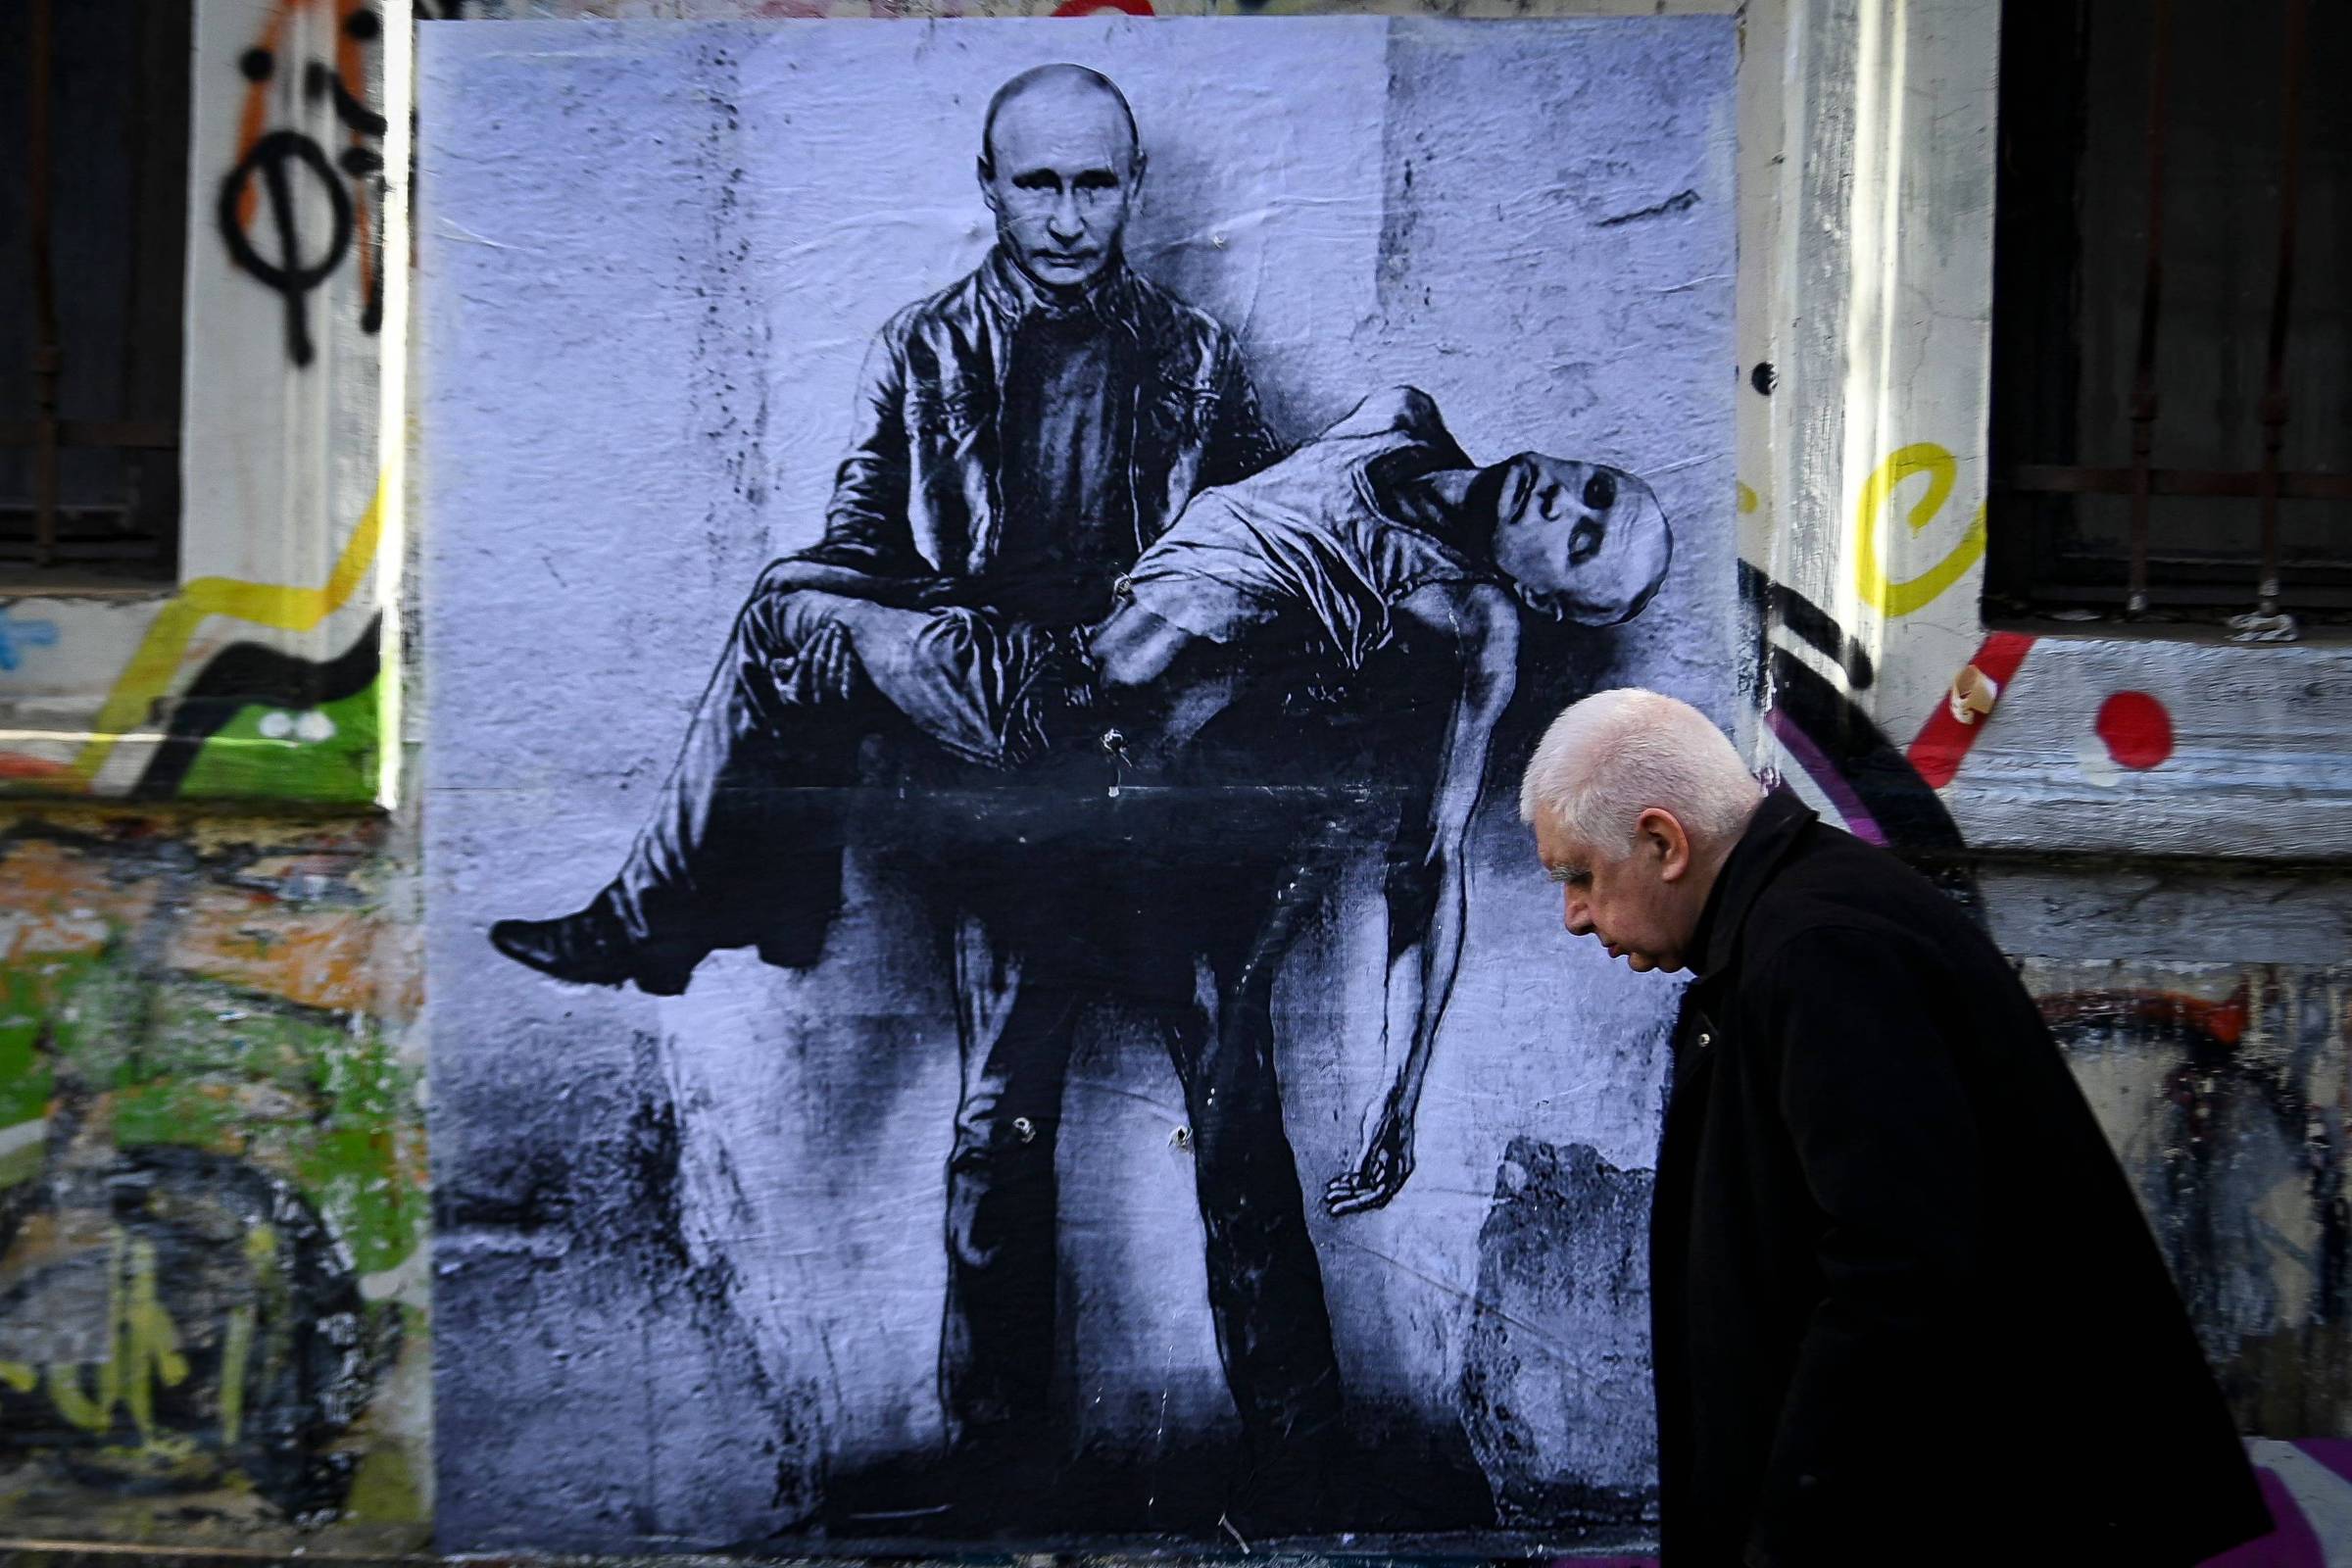 Um raio-X da Rússia no cenário global atual (4) A política externa russa